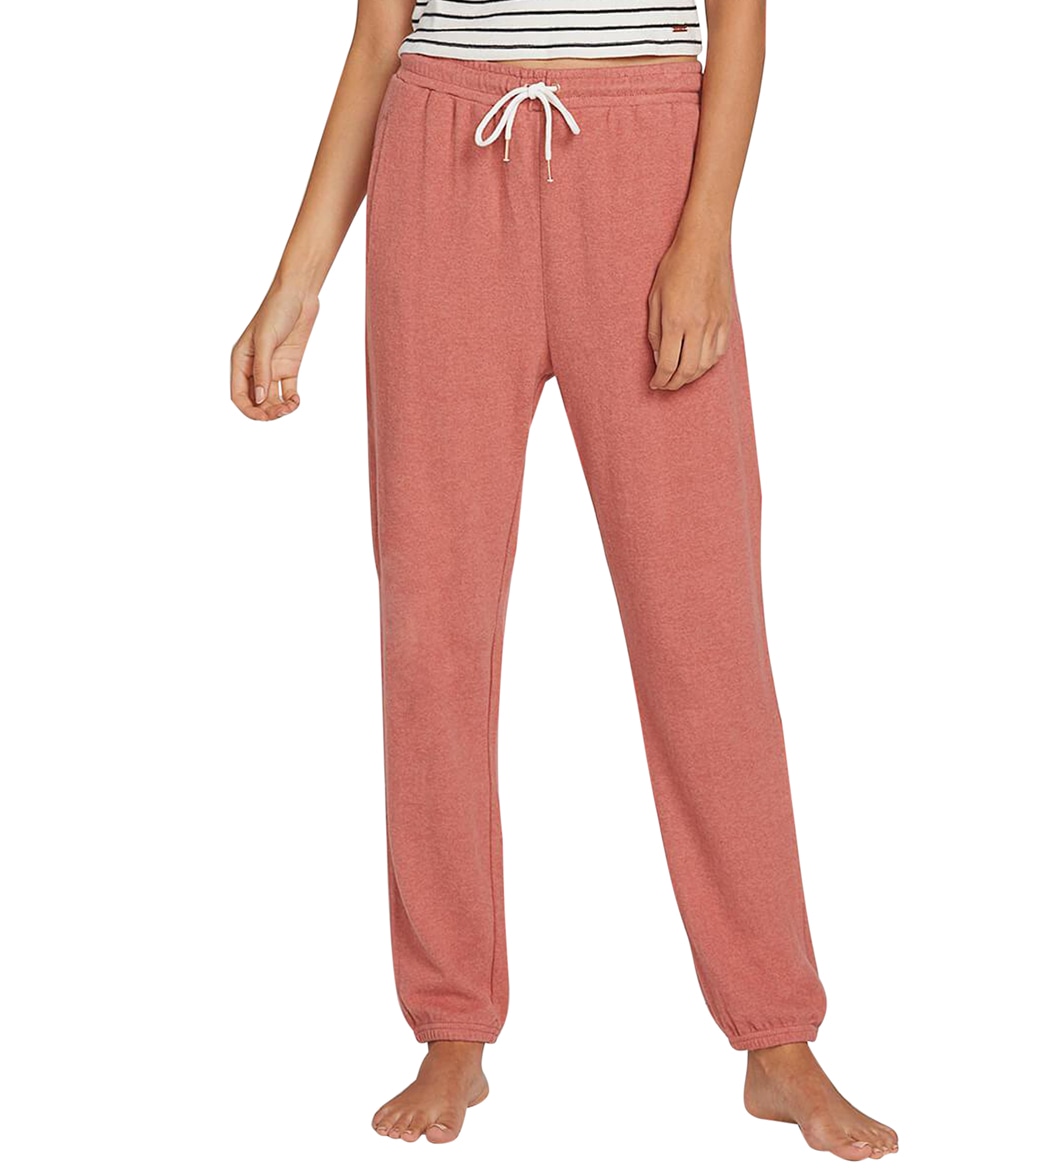 Volcom Women's Lil Fleece Pants - Faded Mauve Large Cotton - Swimoutlet.com